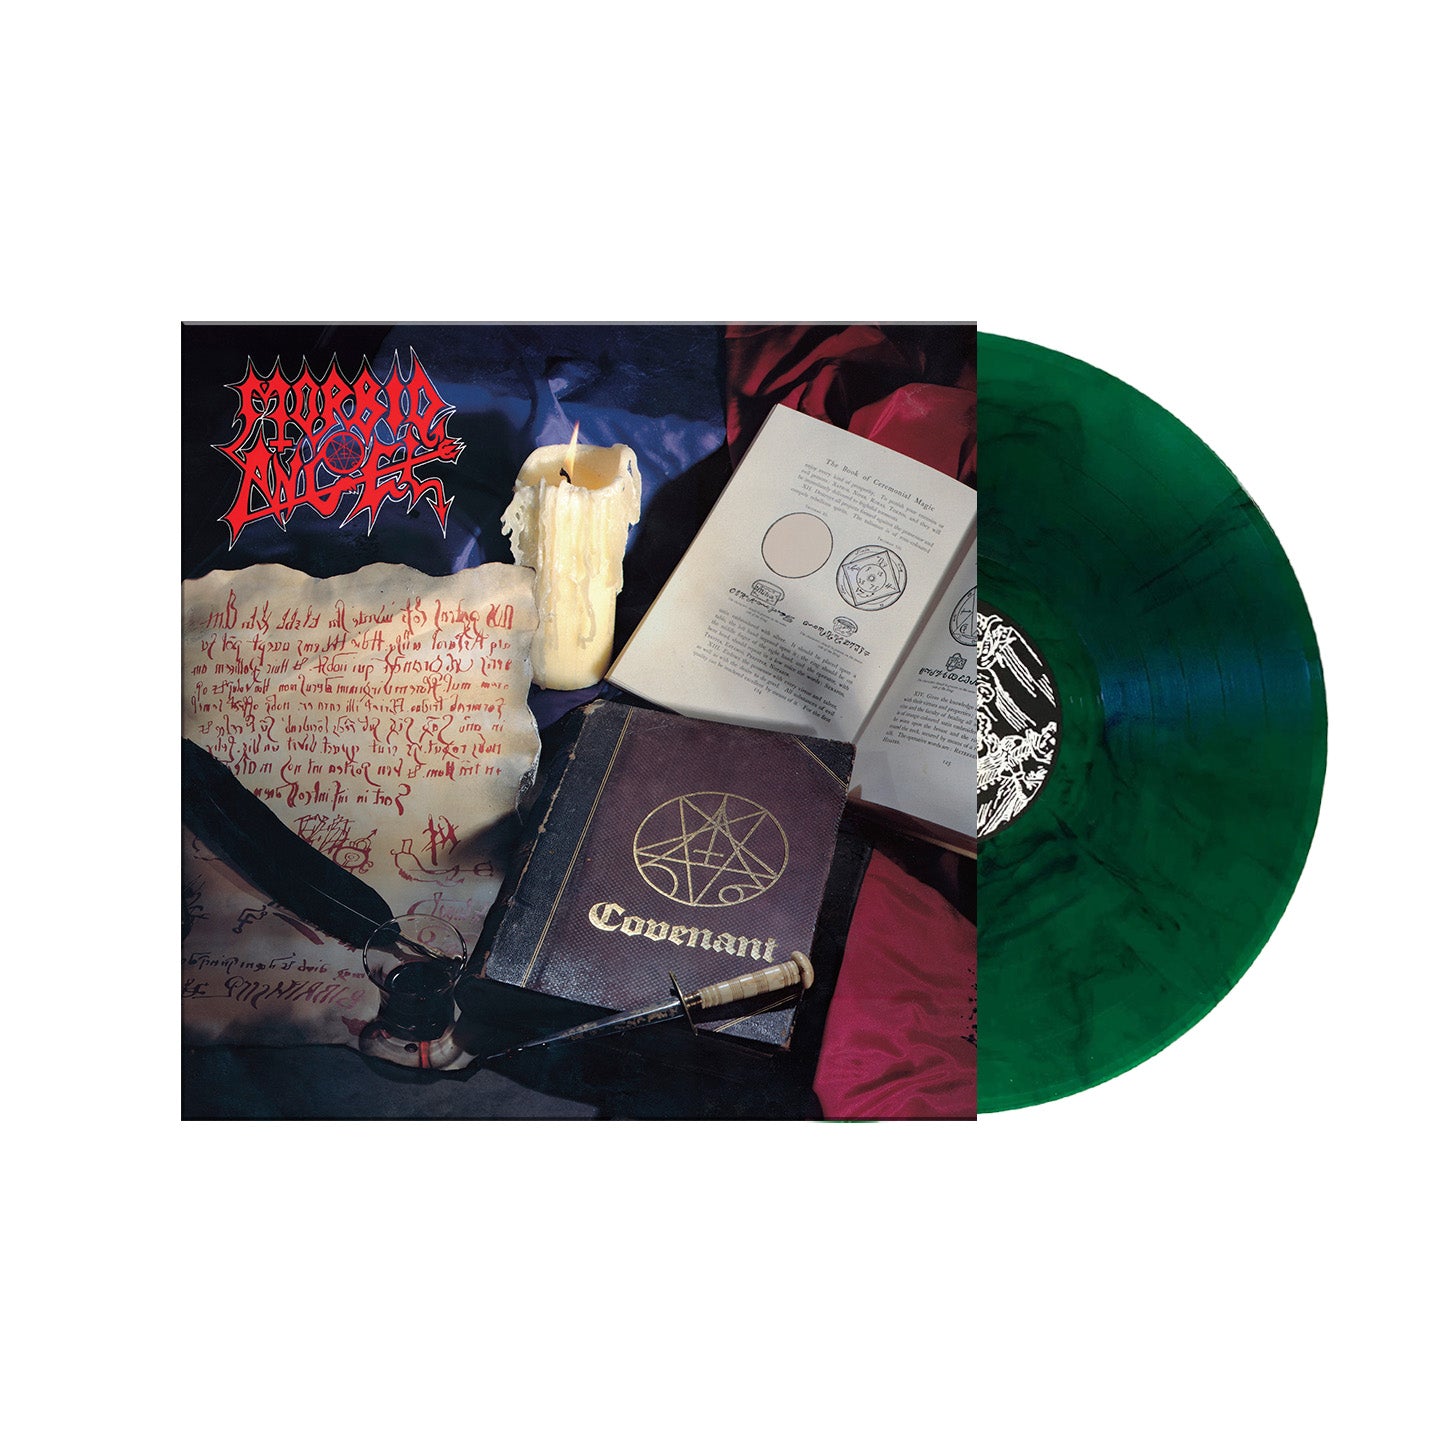 Morbid Angel "Covenant" FDR Green / White Marble Vinyl